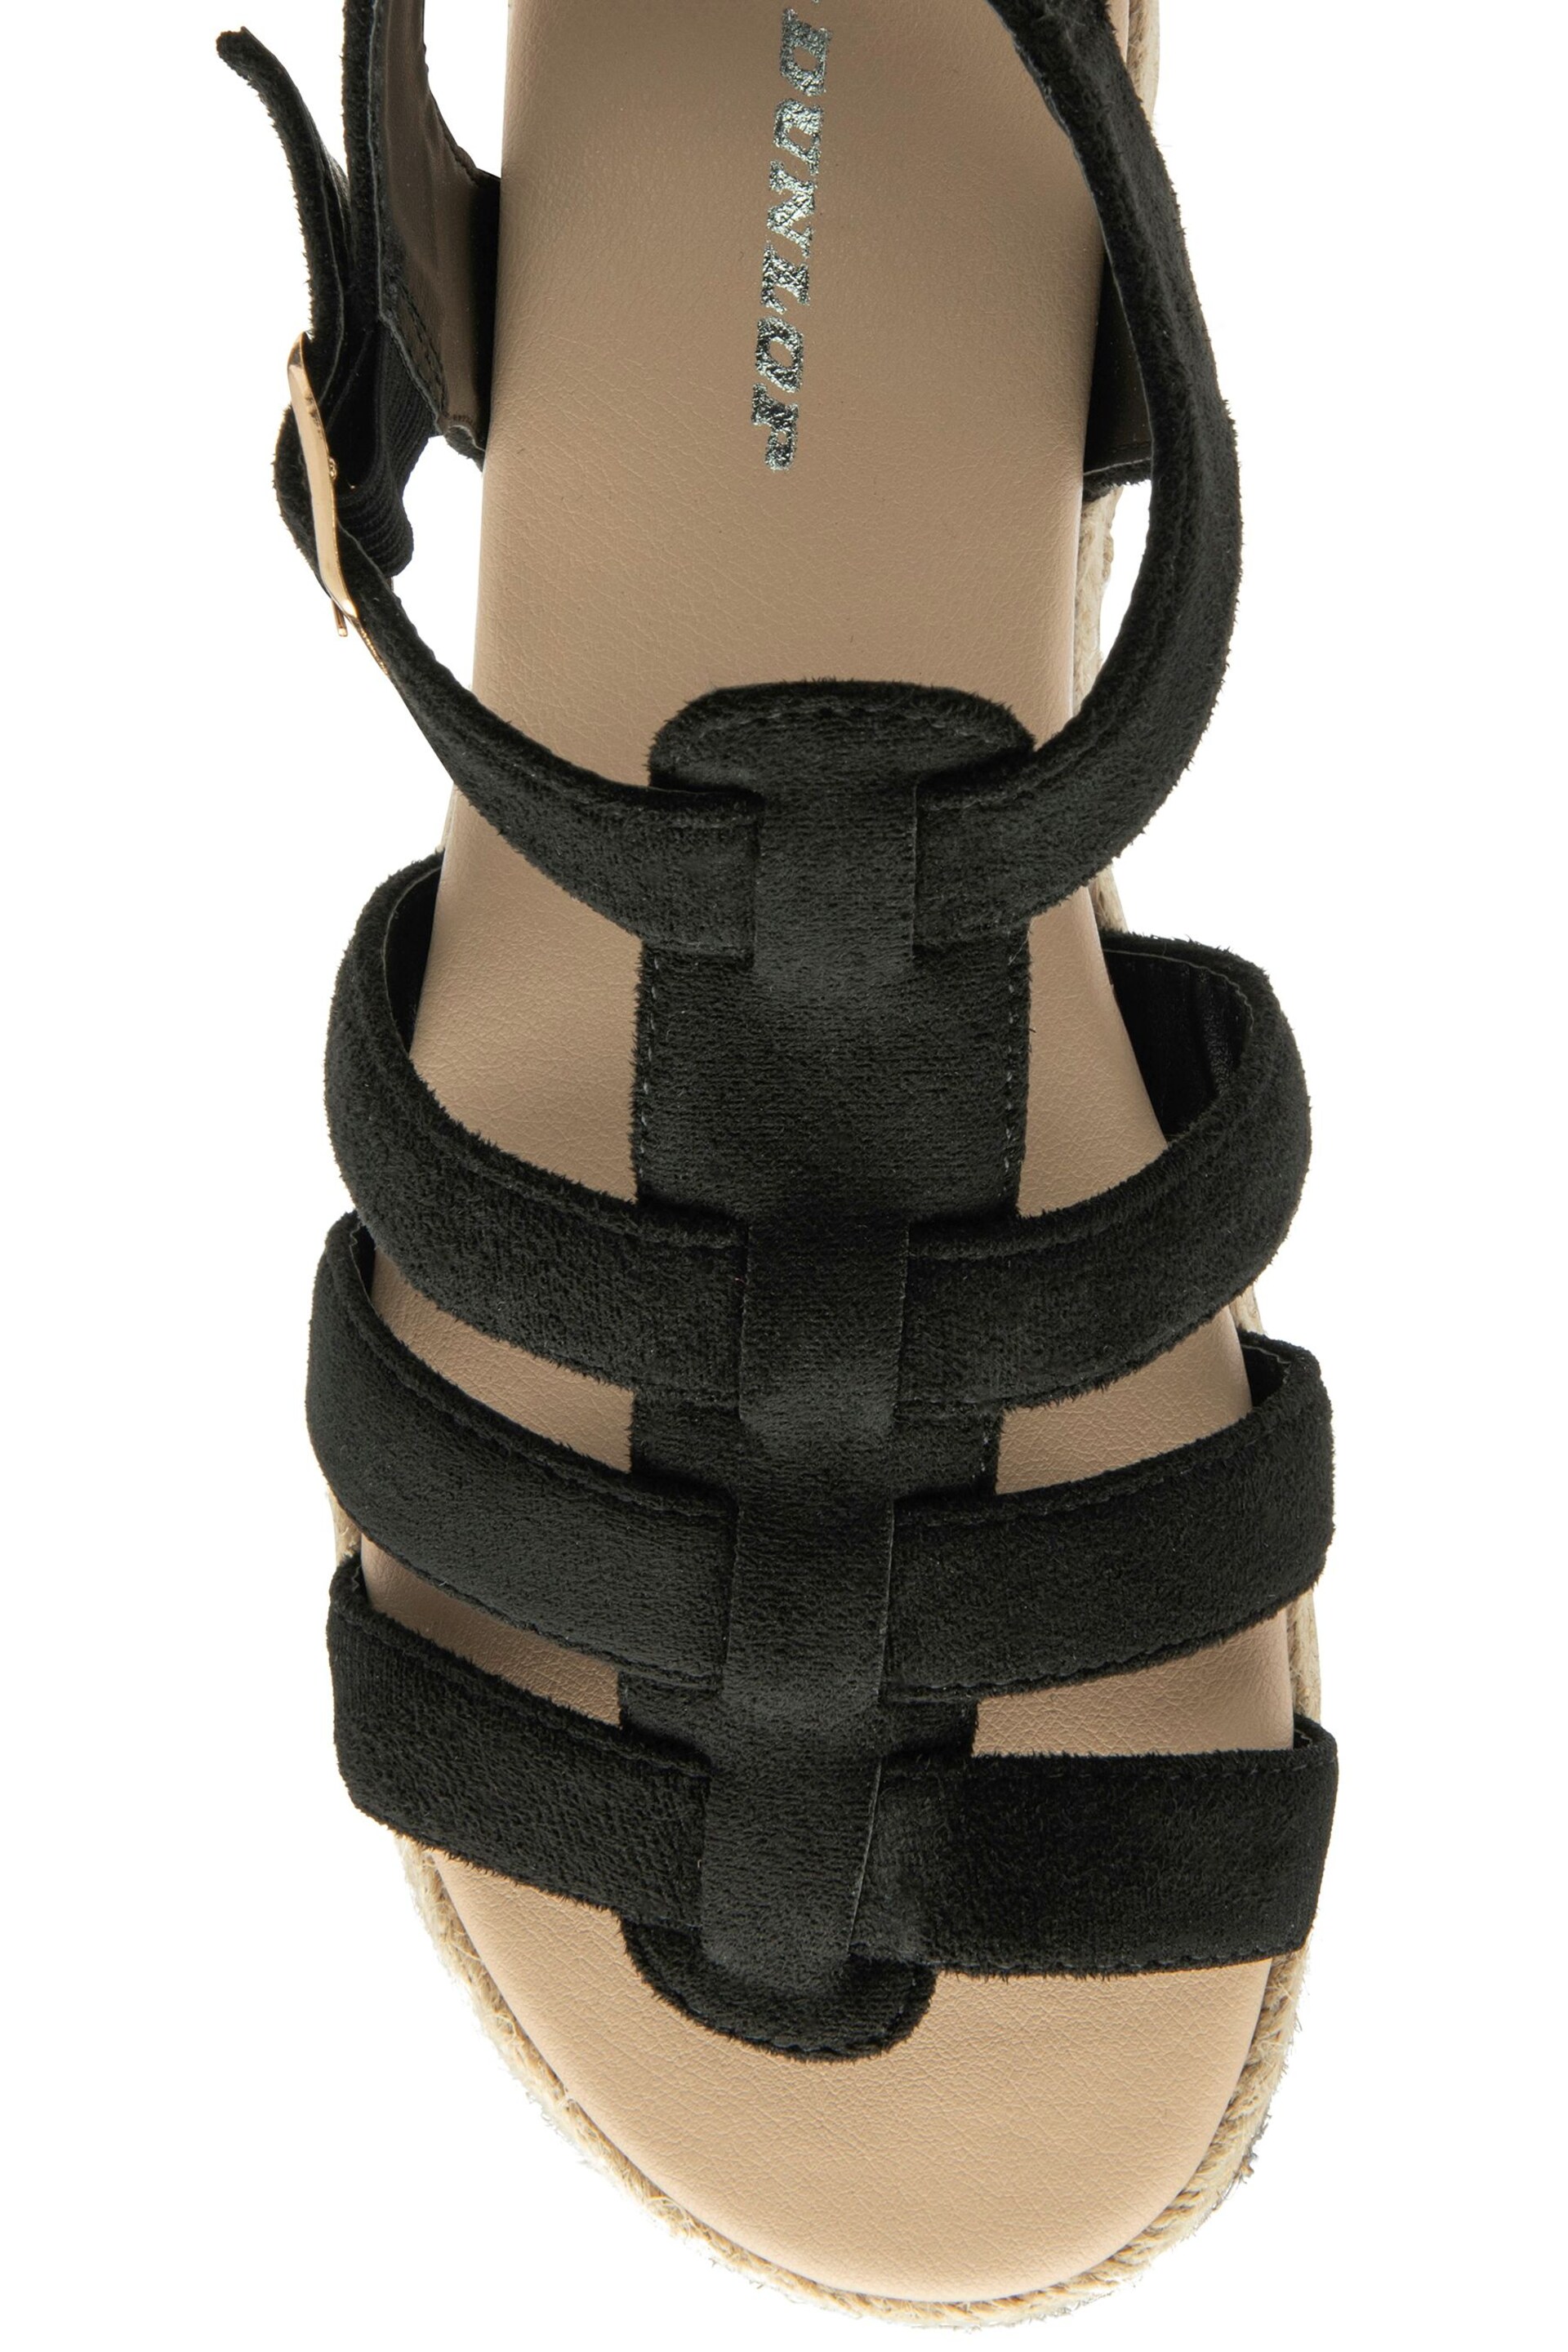 Dunlop Black Ladies Flatform Espadrille Sandals - Image 4 of 4